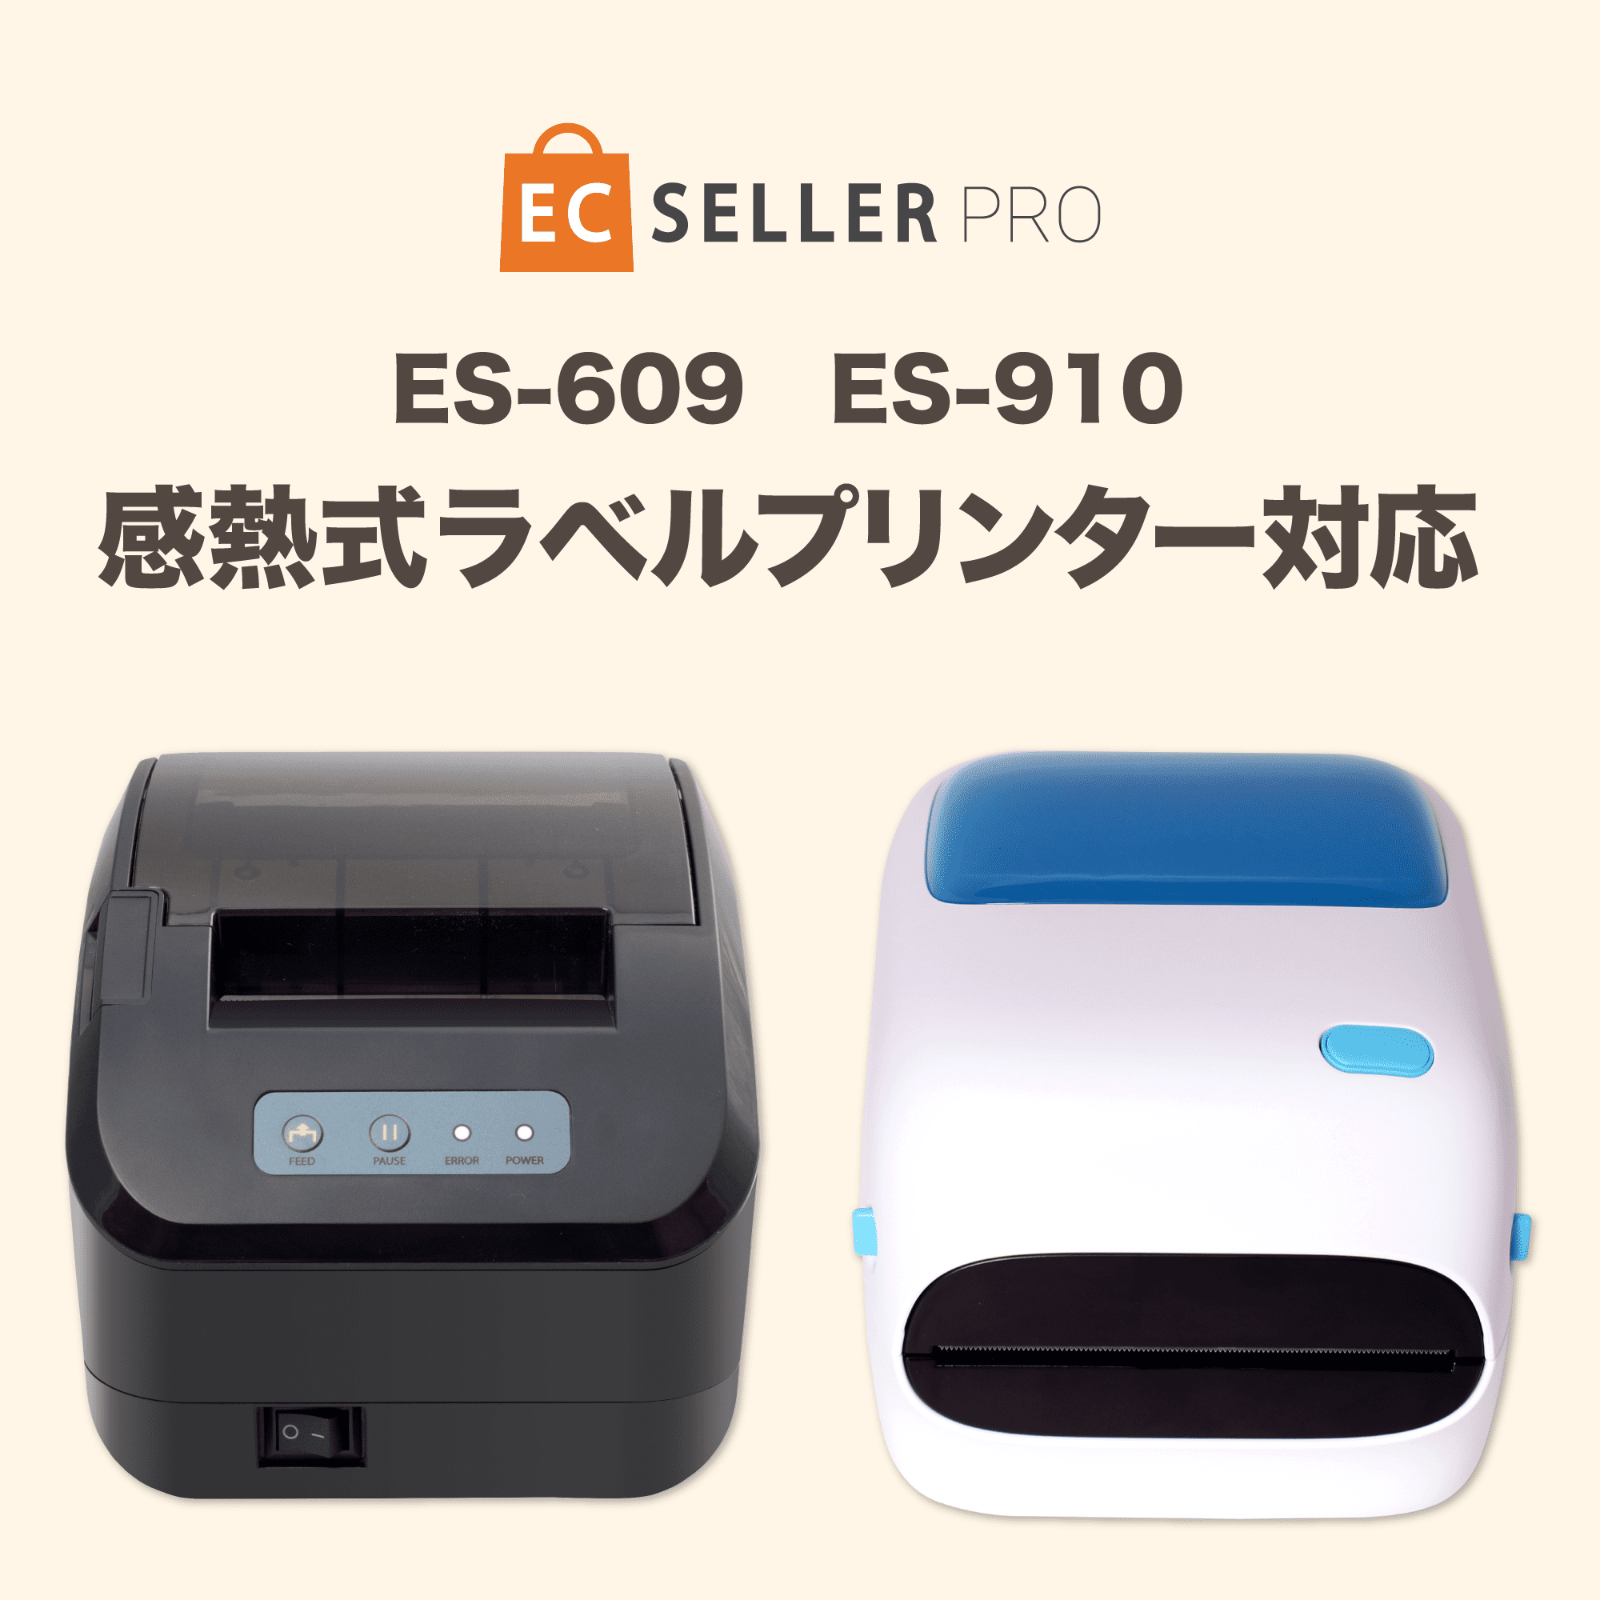 公式ショップ】 EC Seller PROECセラーPRO 感熱式ラベルプリンター